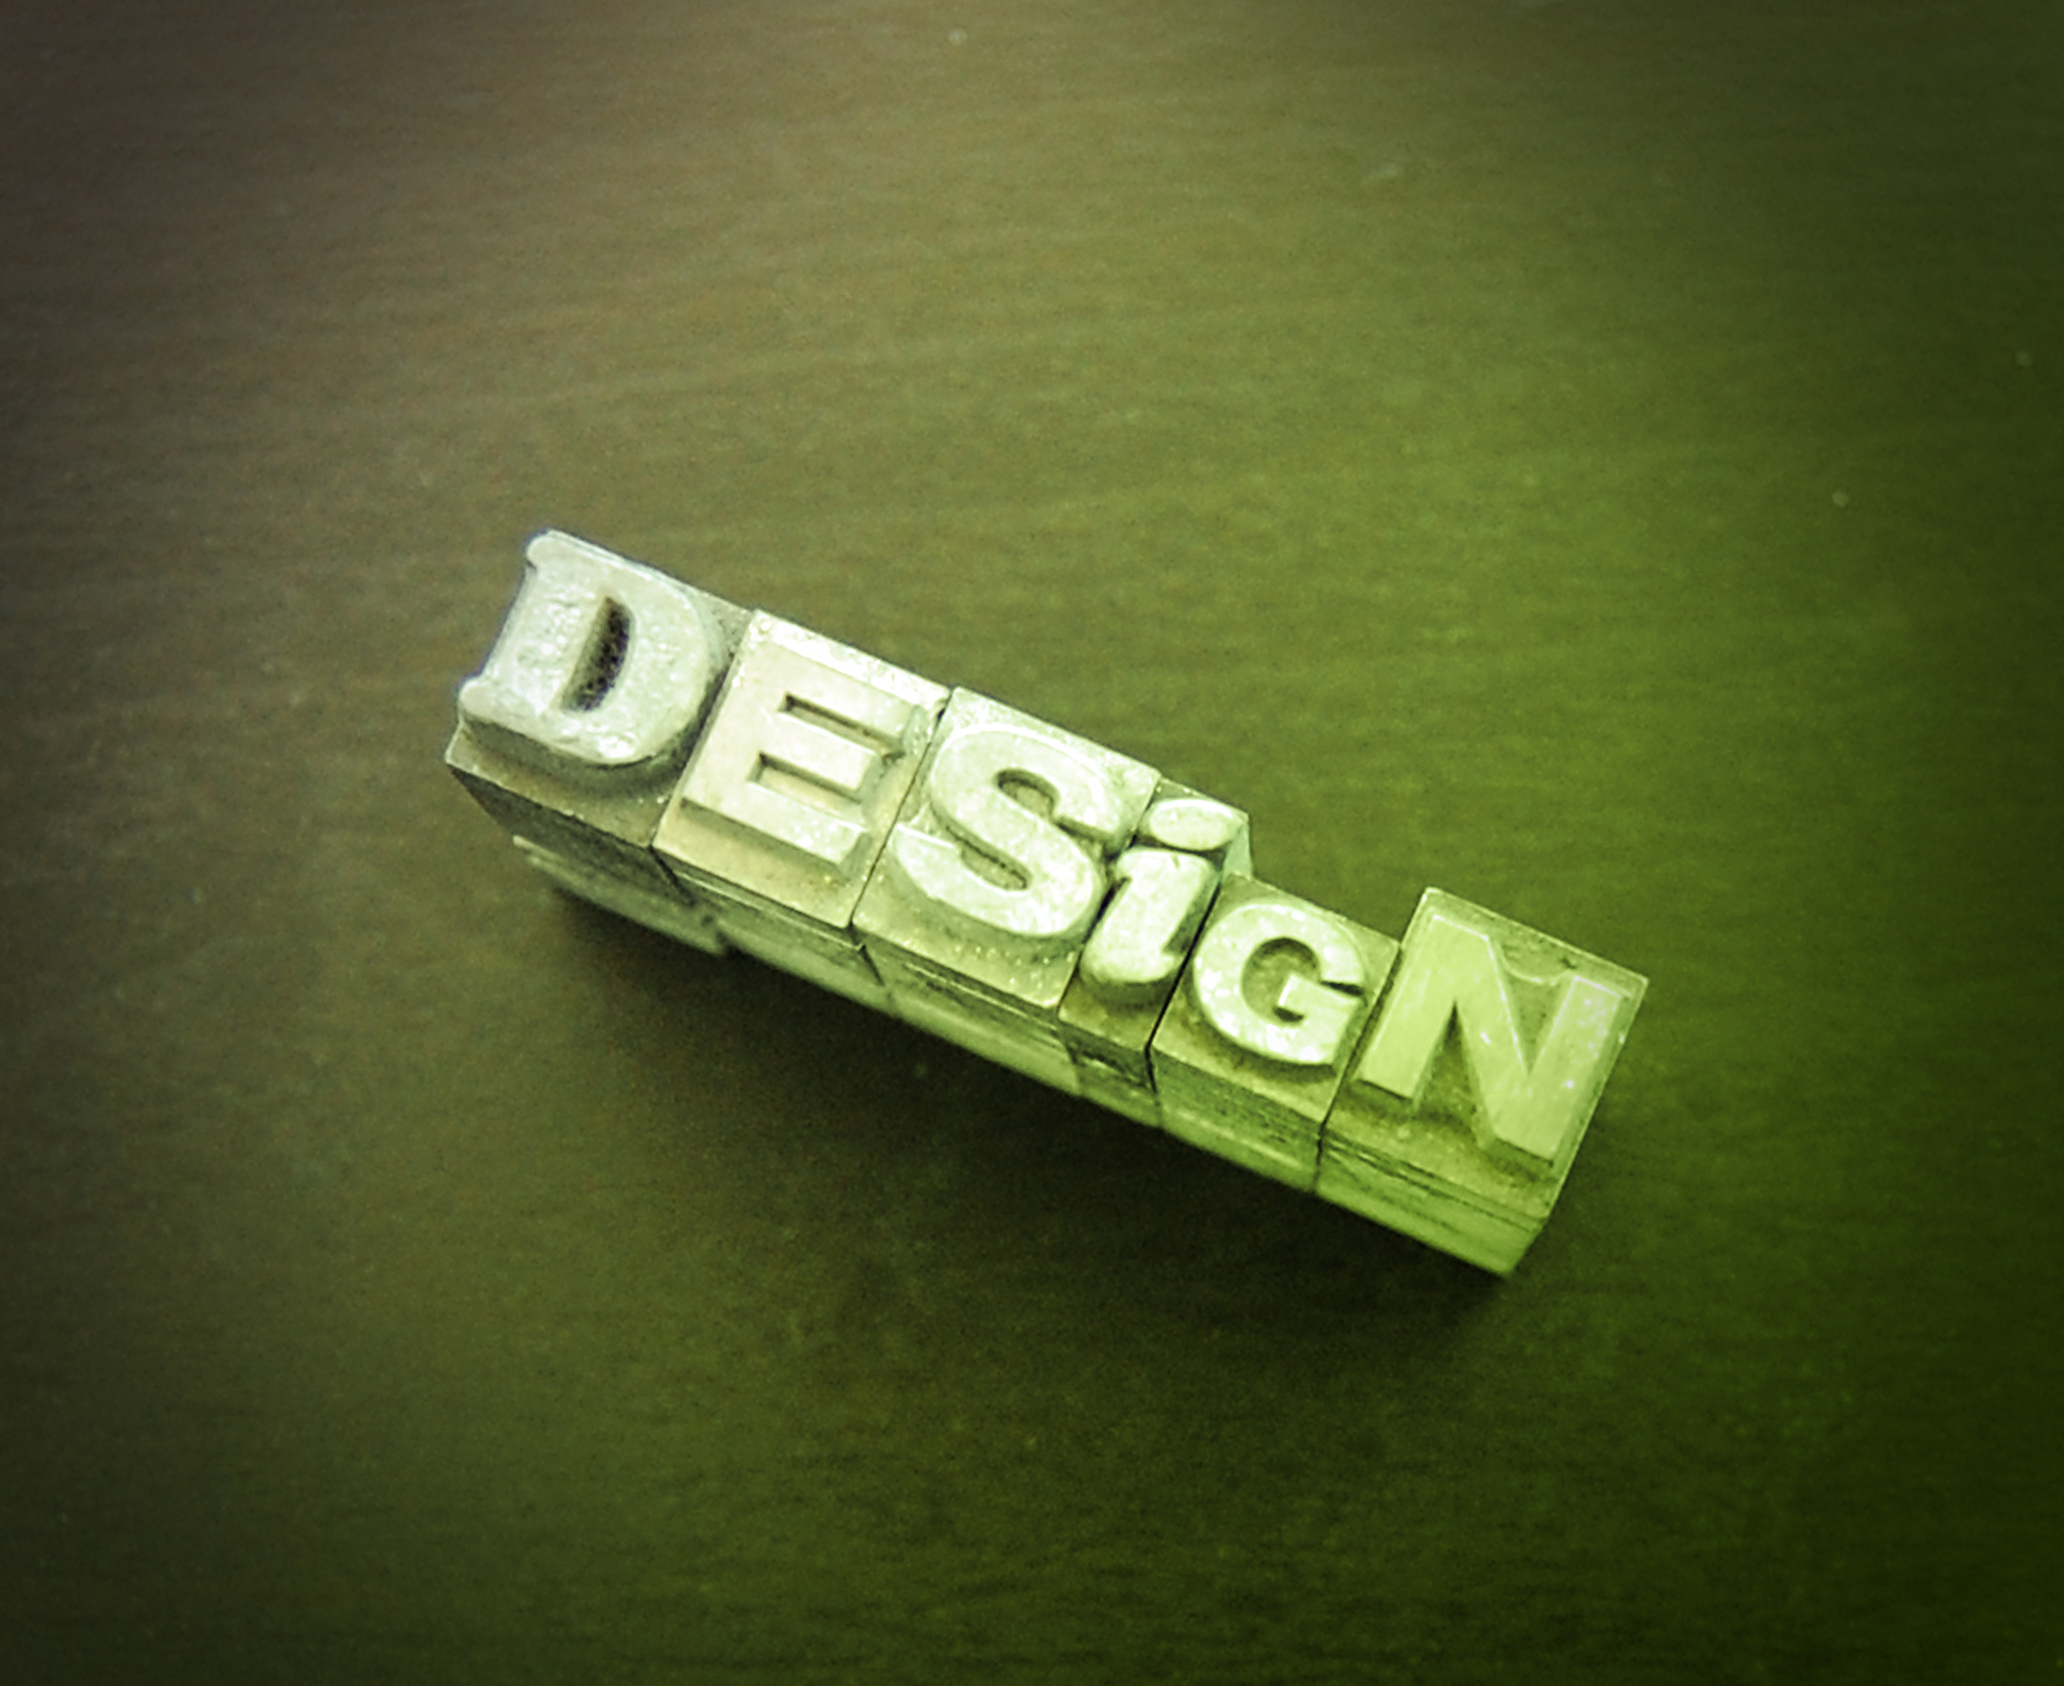 Graphic design service